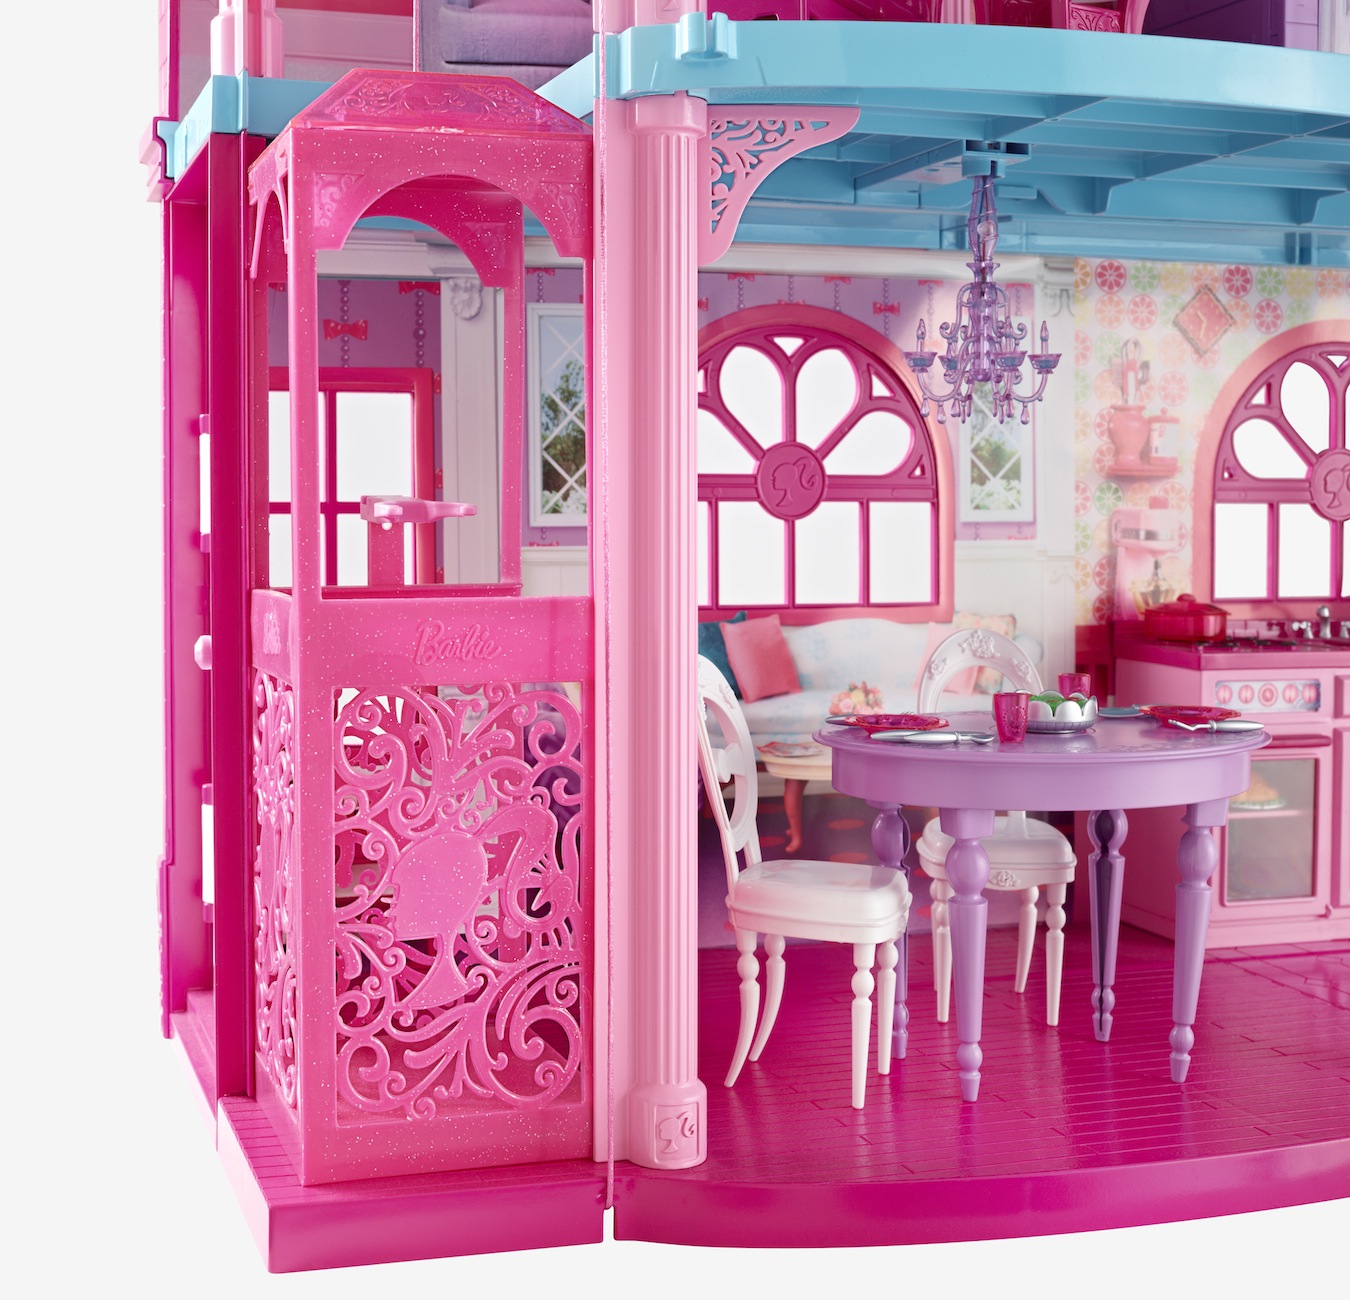 Барби дом 1. Барби Дрим Хаус. Дом Барби Дрим Хаус. Dreamhouse Barbie Малибу. Barbie’s Malibu Dreamhouse.